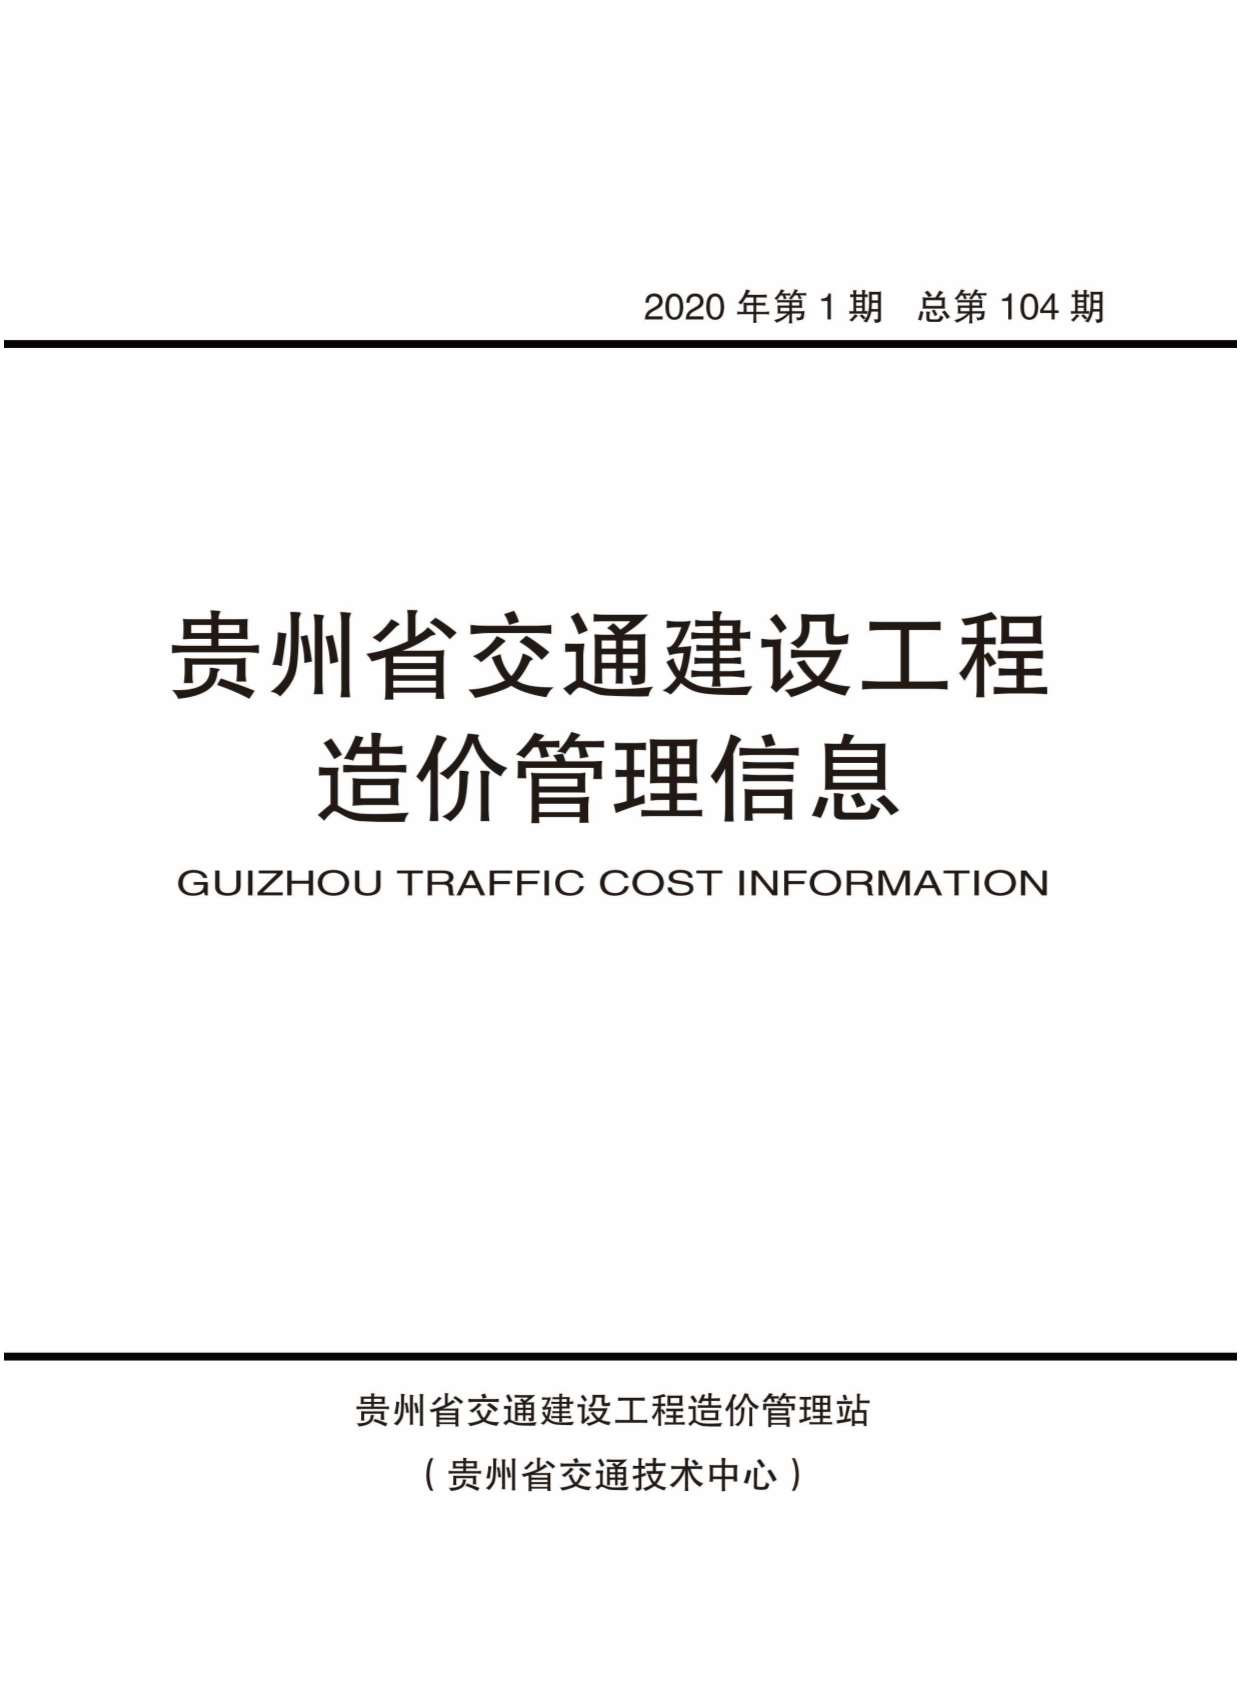 贵州省2020年1月交通公路信息价